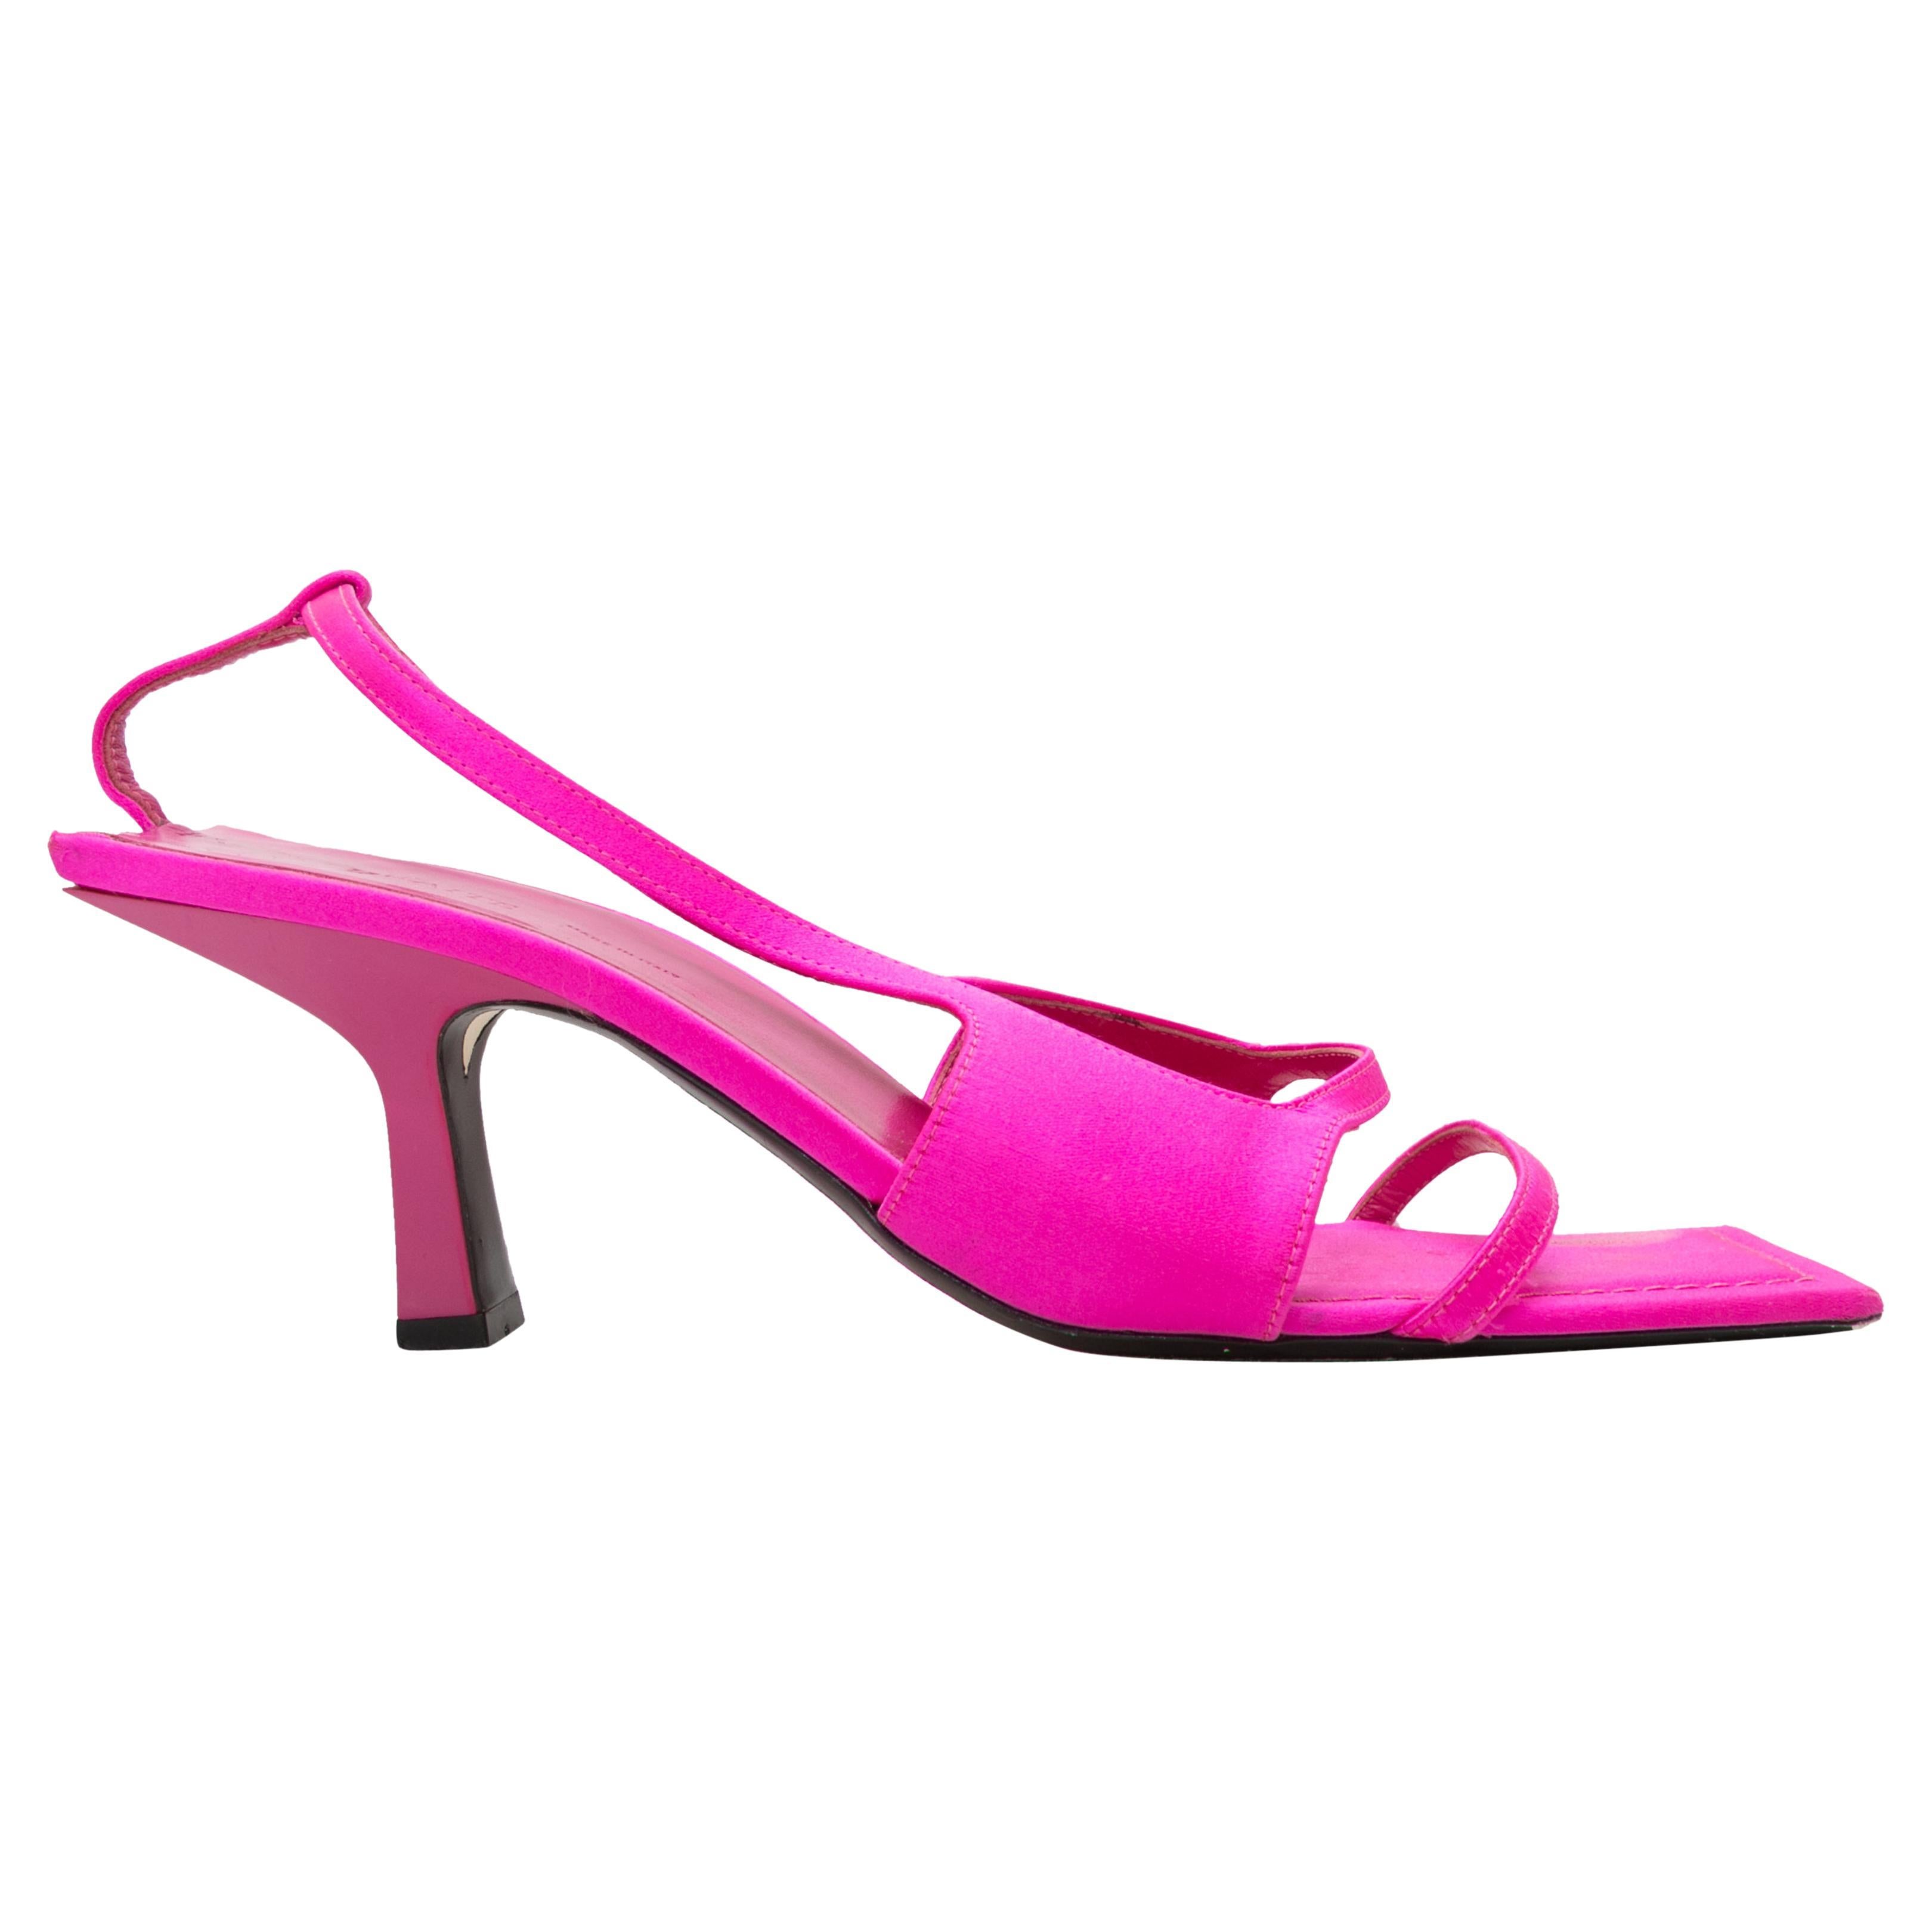 Fuchsia Khaite Satin Square-Toe Sandals Size 39.5 For Sale